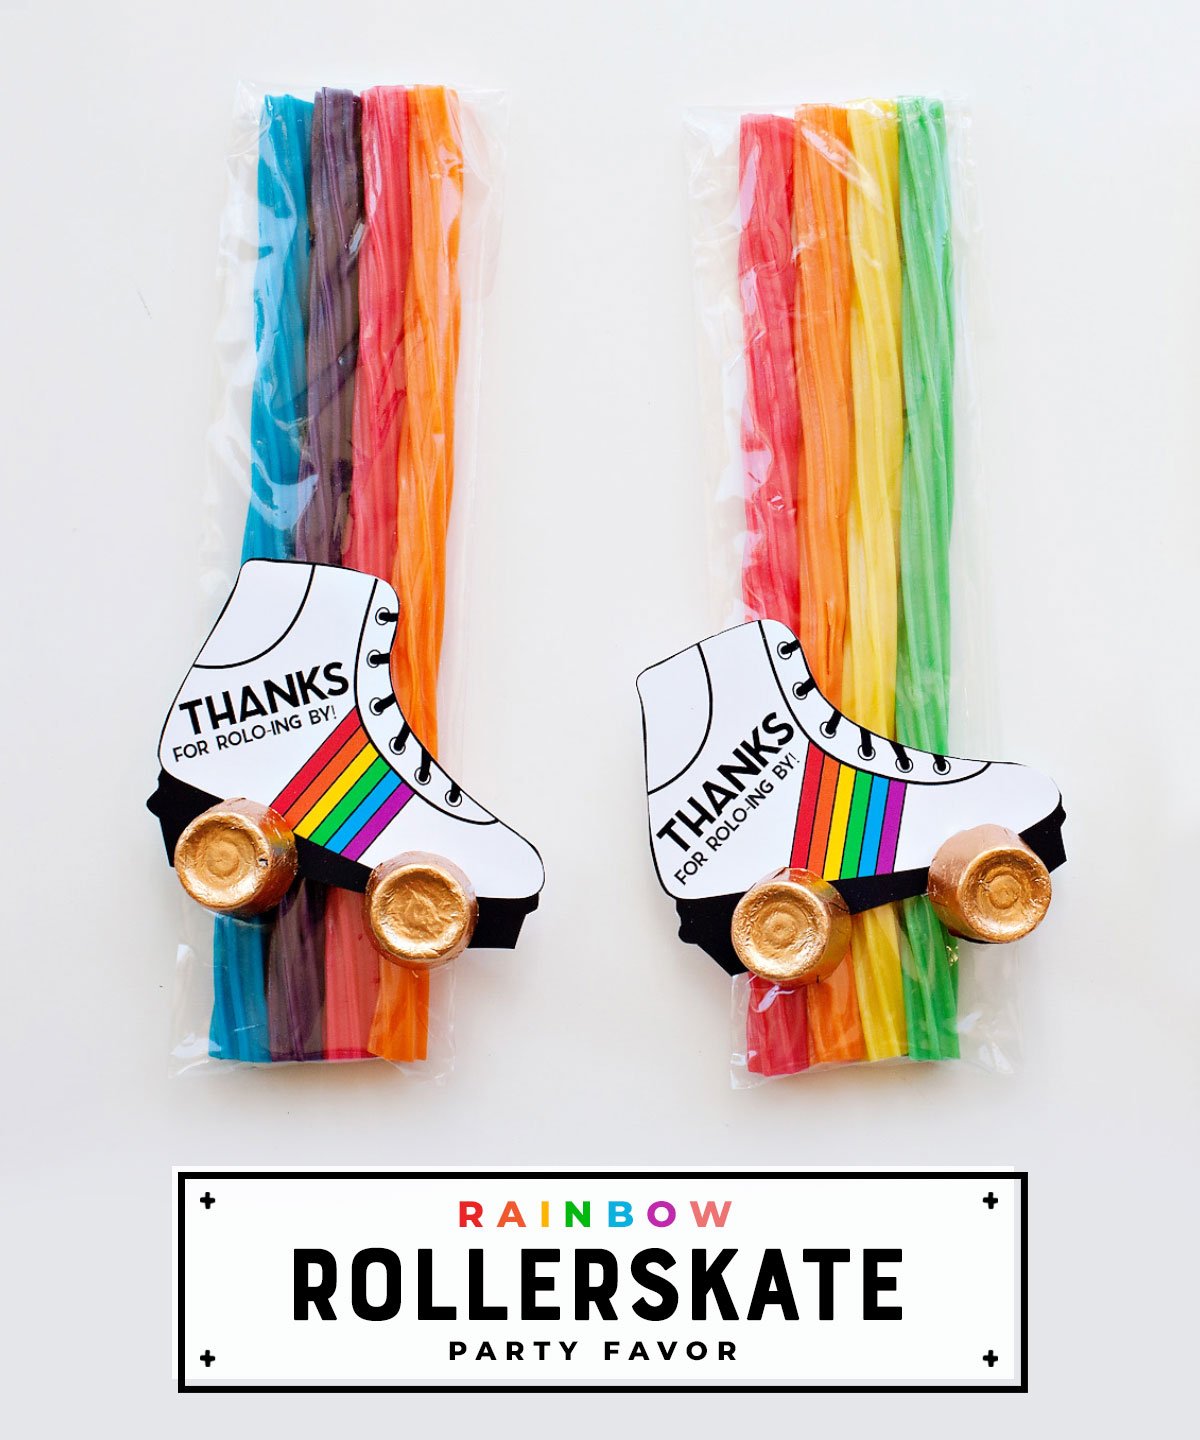 Roller skate Party Favor